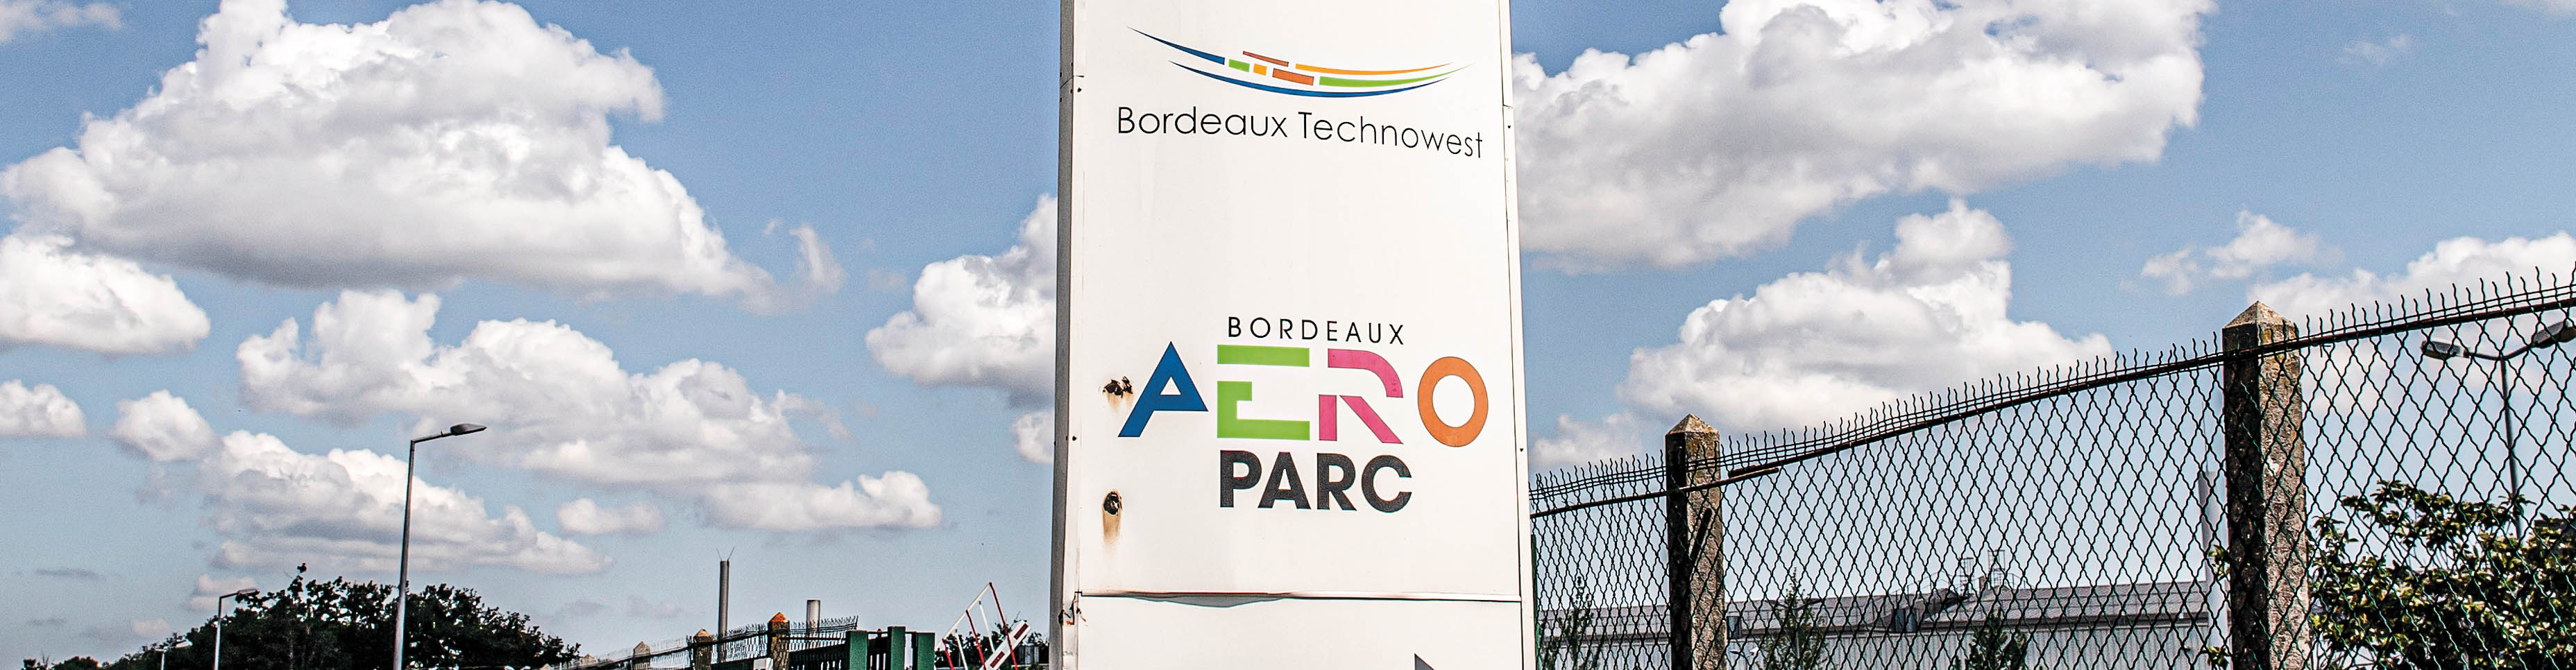 Bordeaux Aéroparc : un village industriel en son jardin